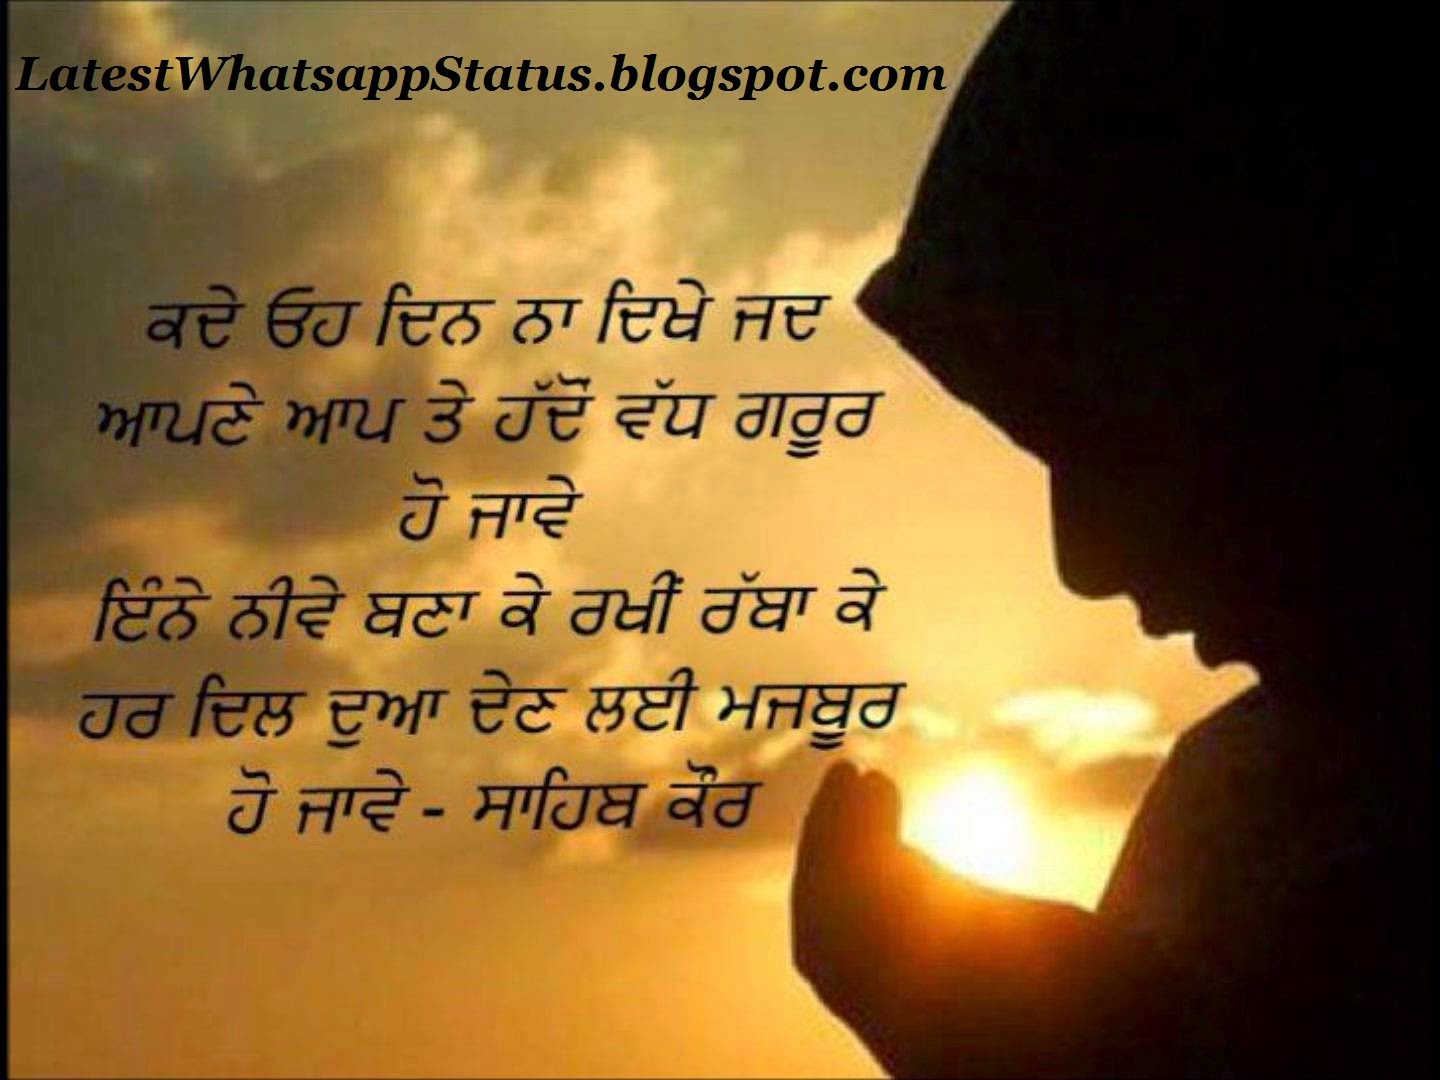 Sad Quotes For Whatsapp Status In Punjabi Broken heart shayari in punjabi whatsapp status quotes